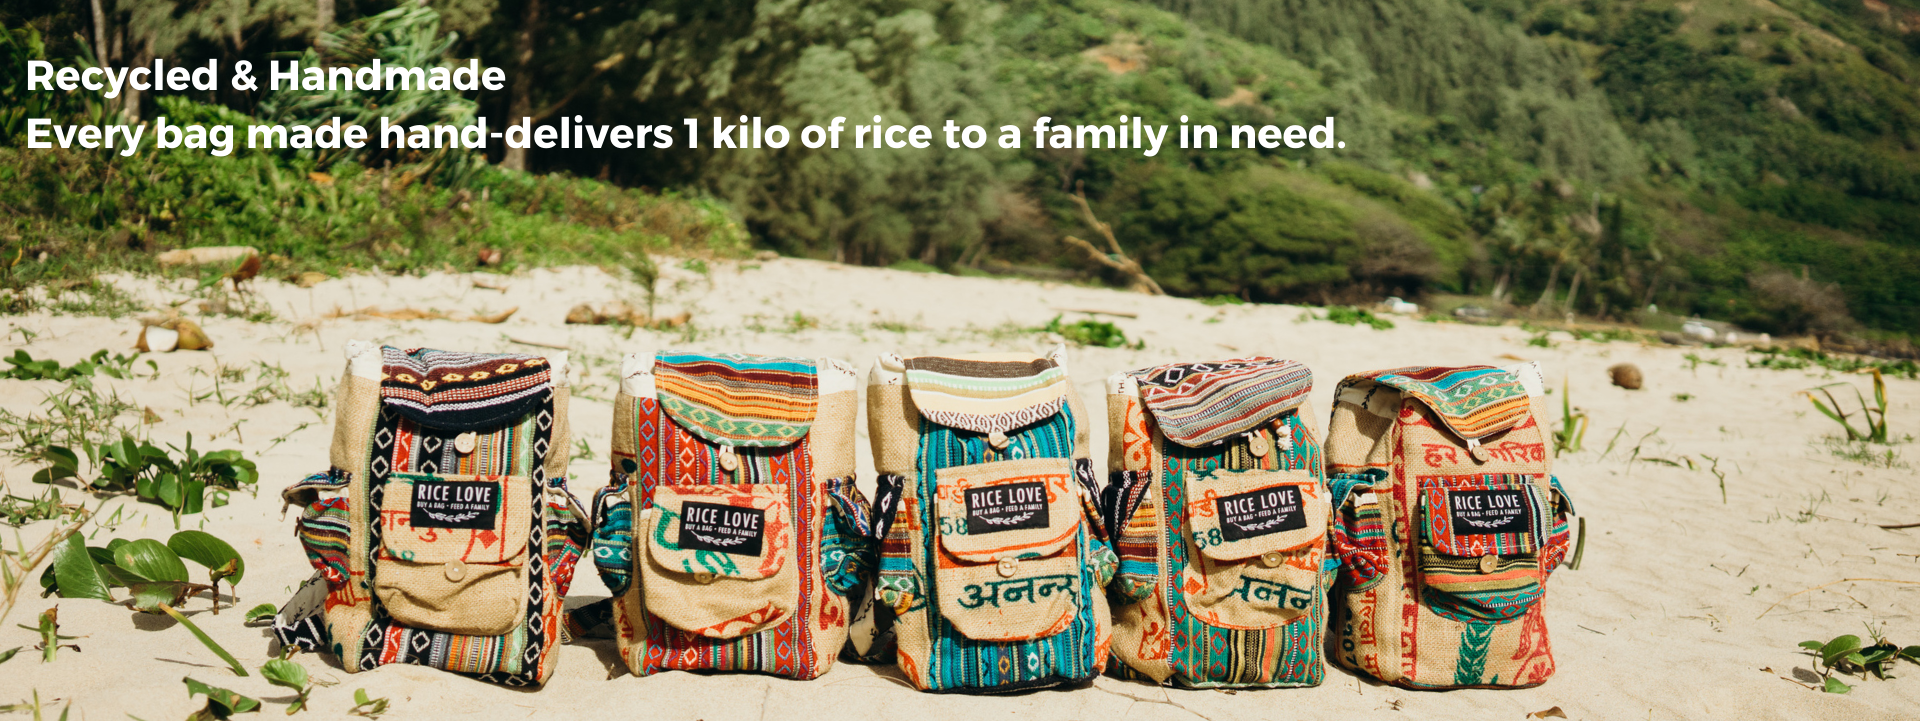 5 rice love backpacks on a beach 